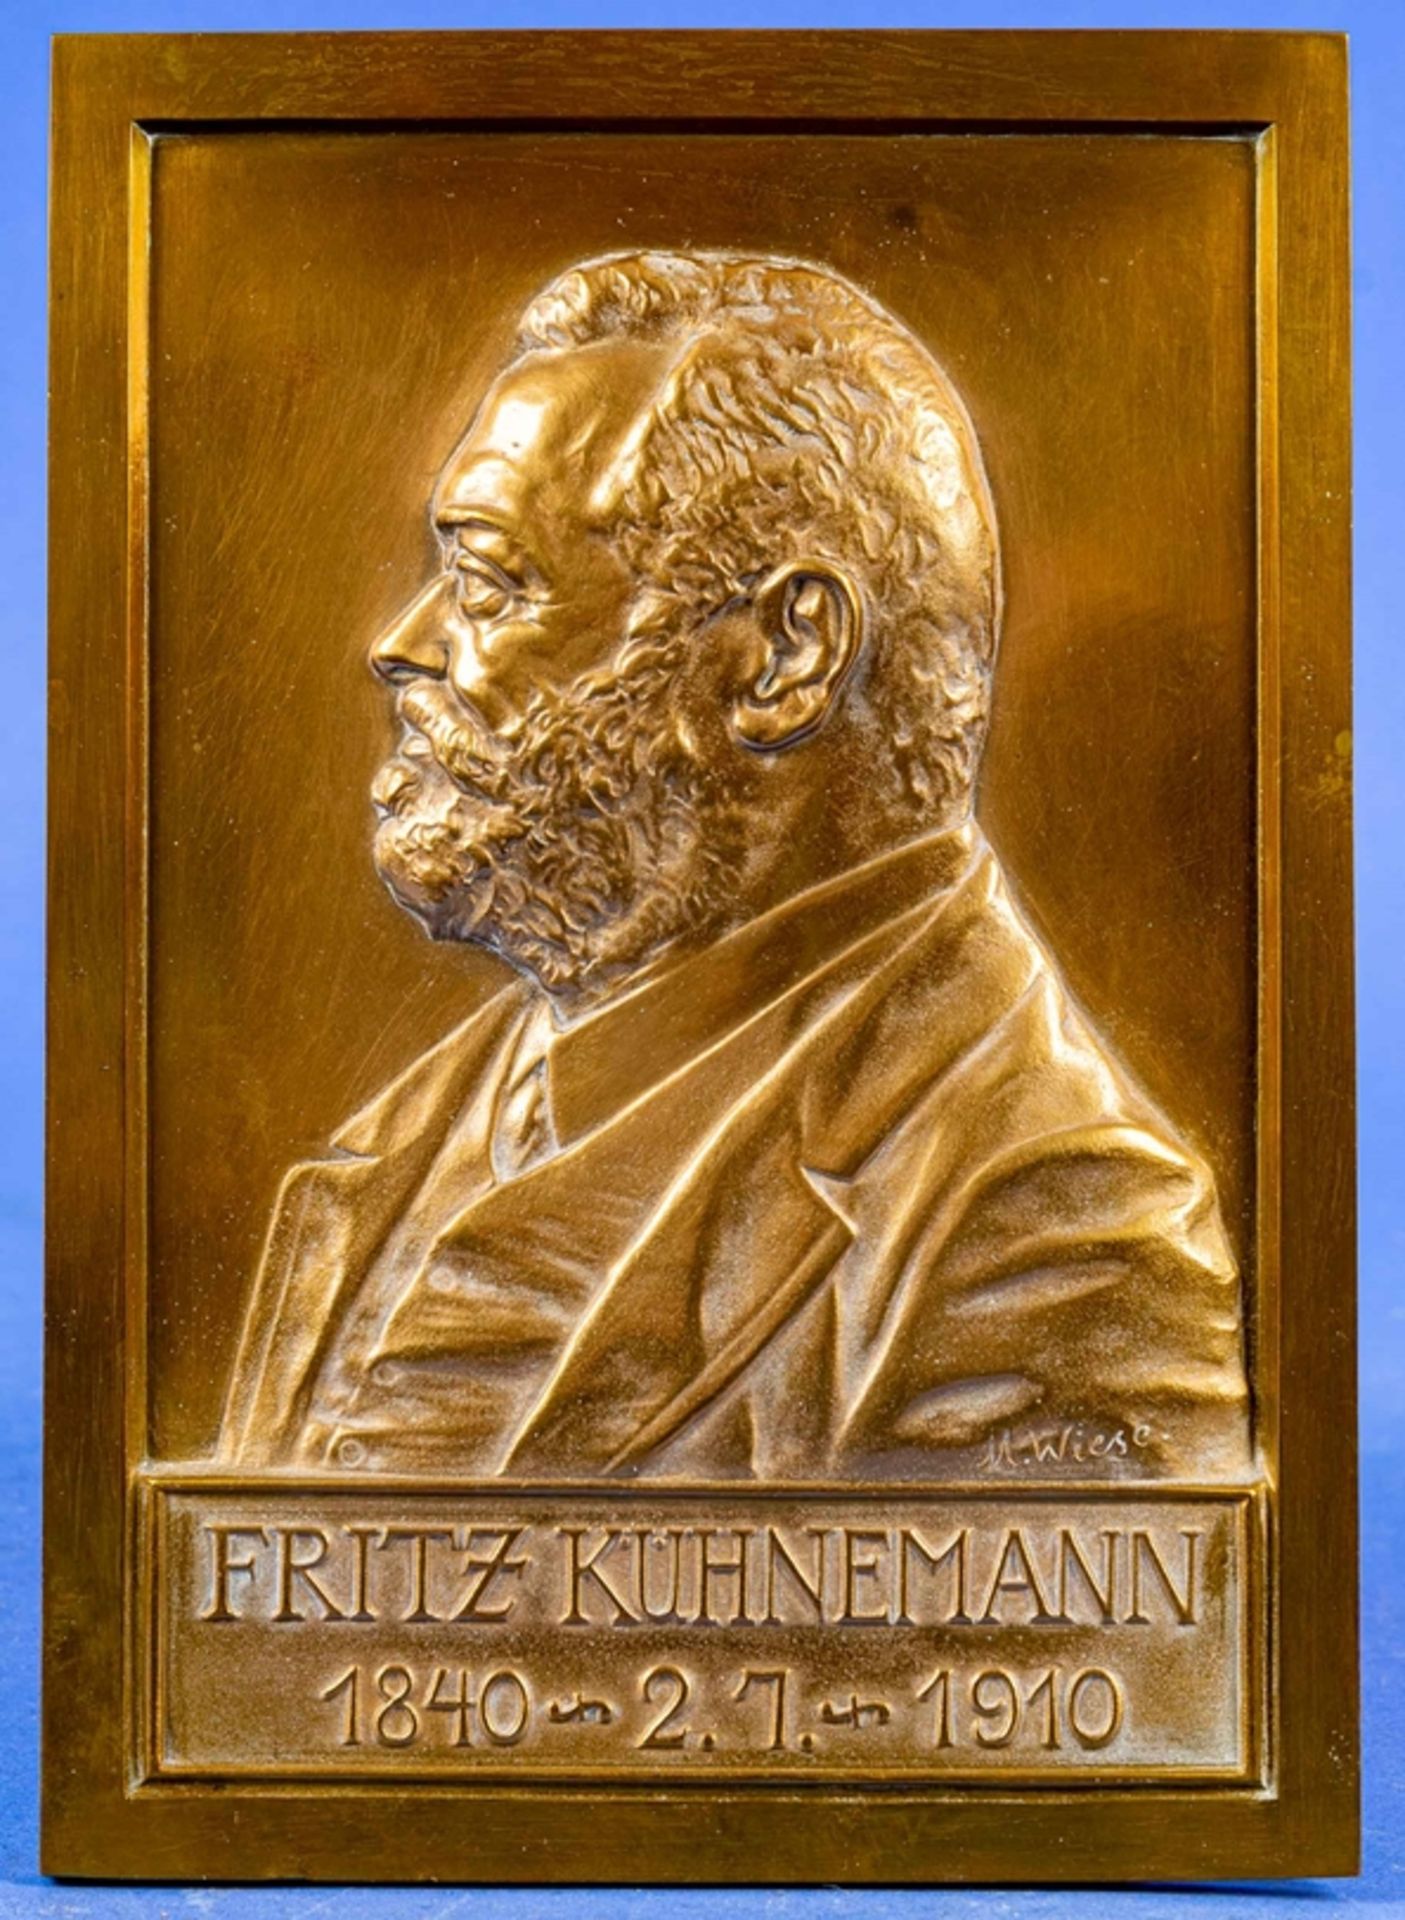 Porträt-Relief-Platte, Bronze mit plastisch gearbeitetem Halbbildnis des Fritz Kühnemann (1840 - 2.